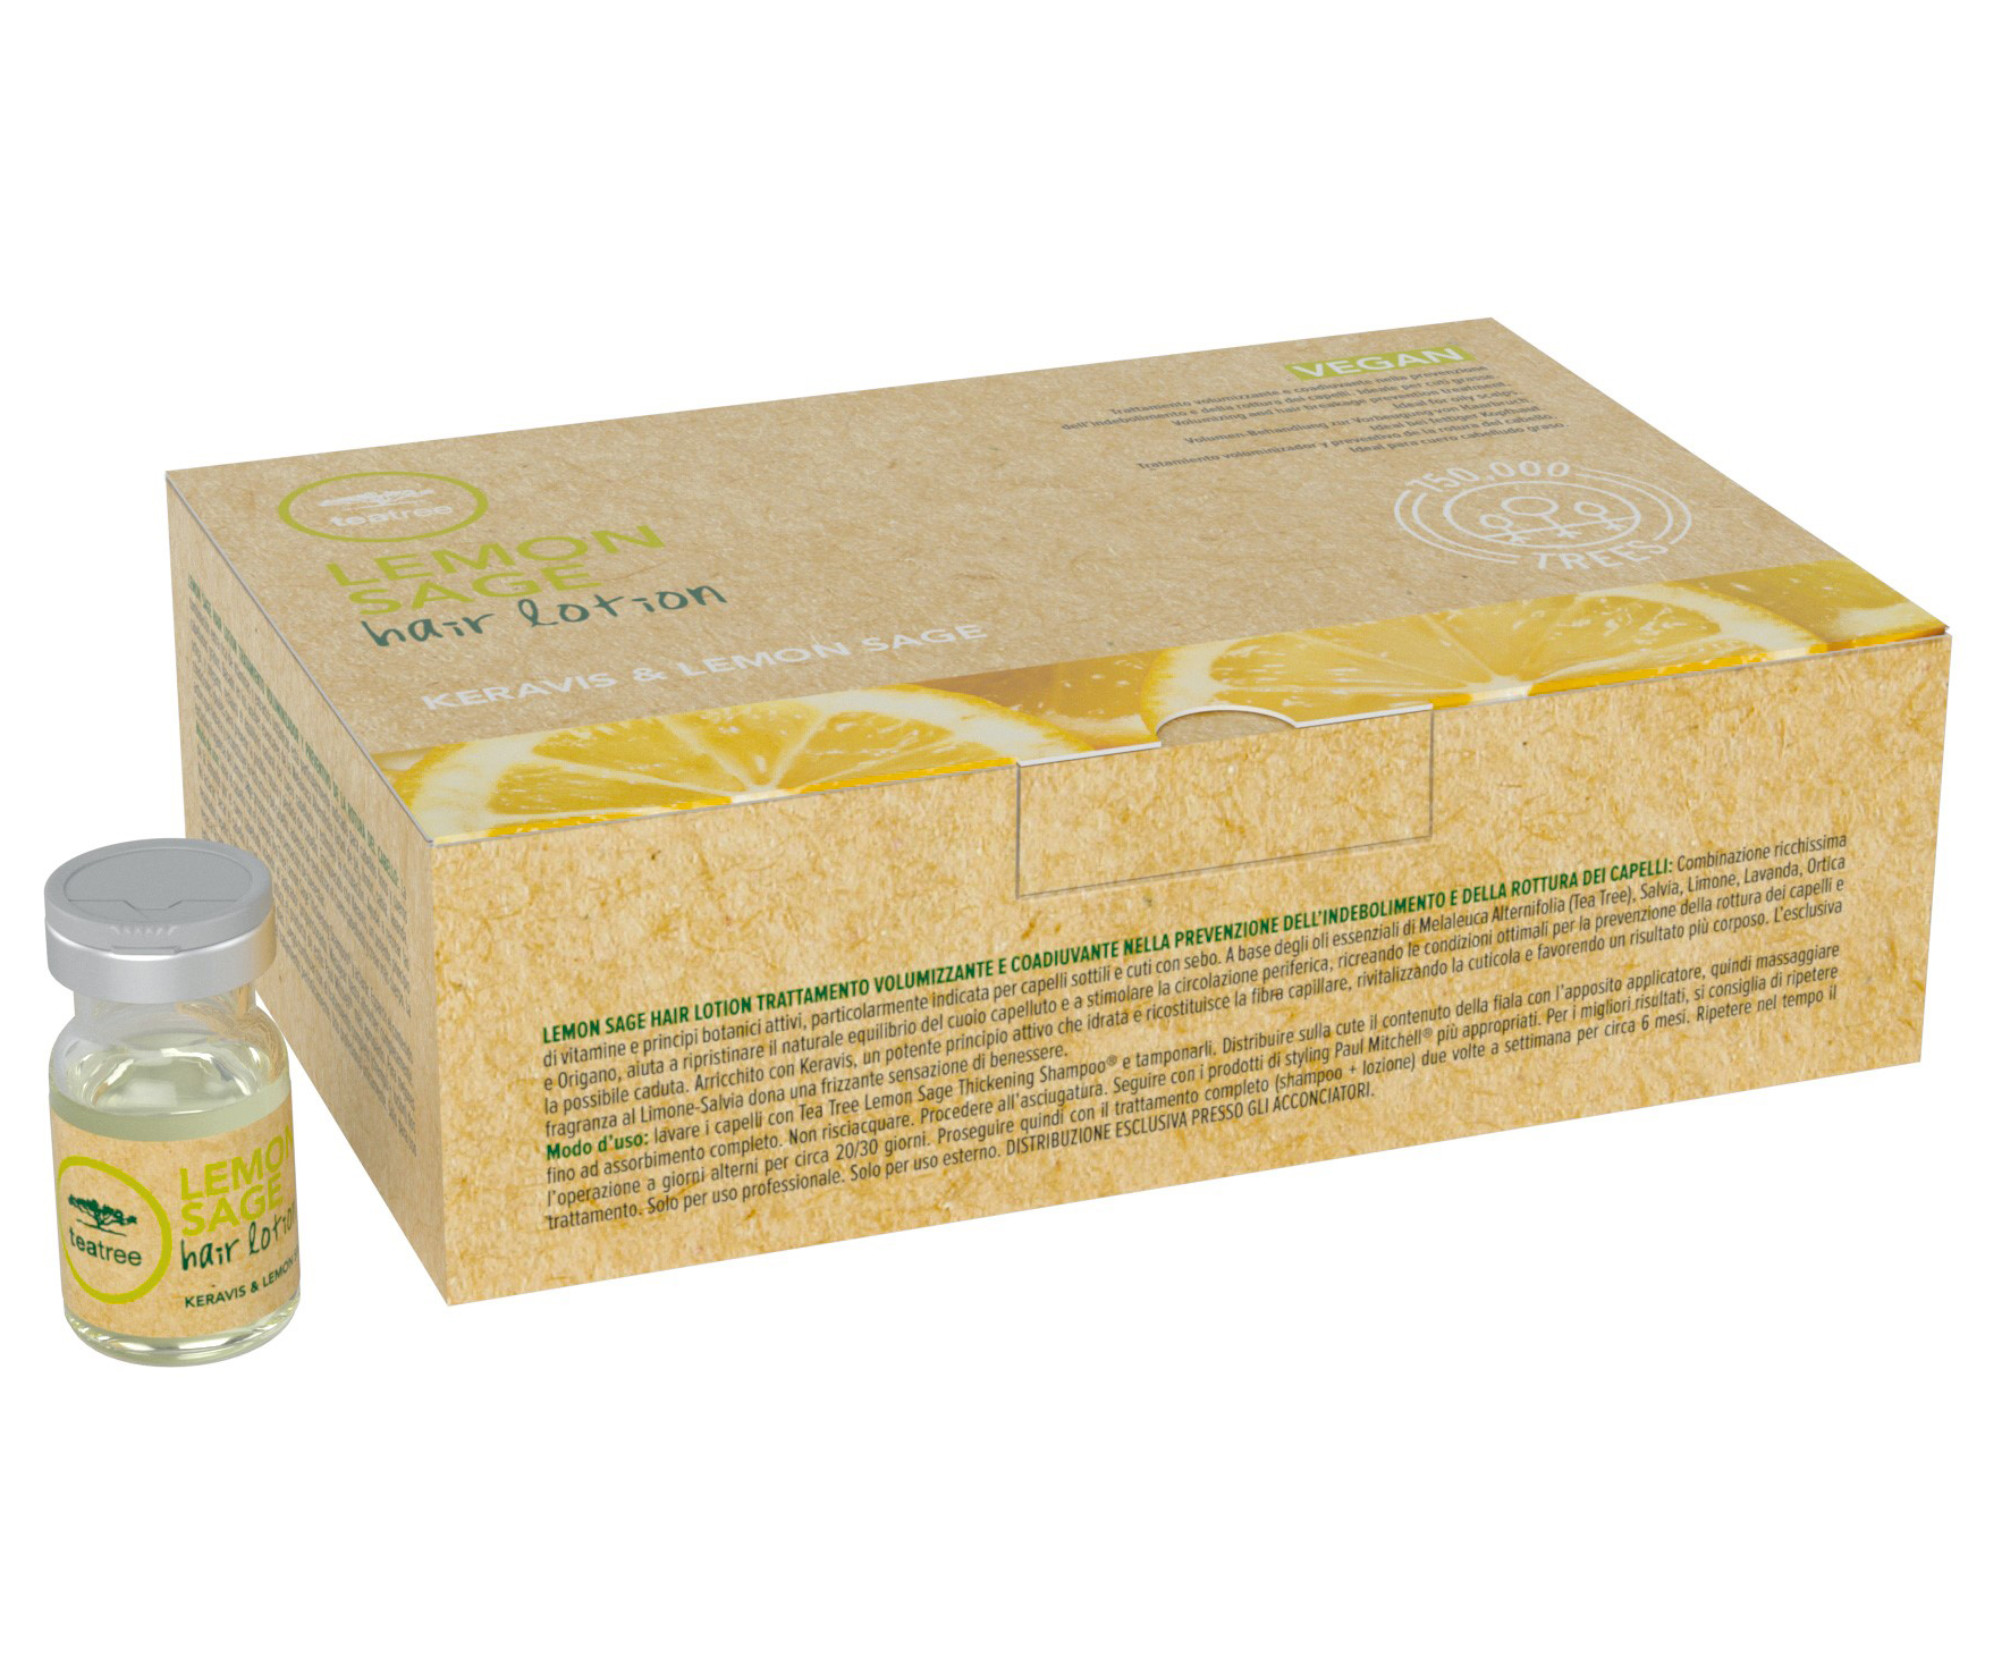 Ampulky proti padání vlasů Lemon Sage Paul Mitchell - 12 x 6 ml (203061) + dárek zdarma